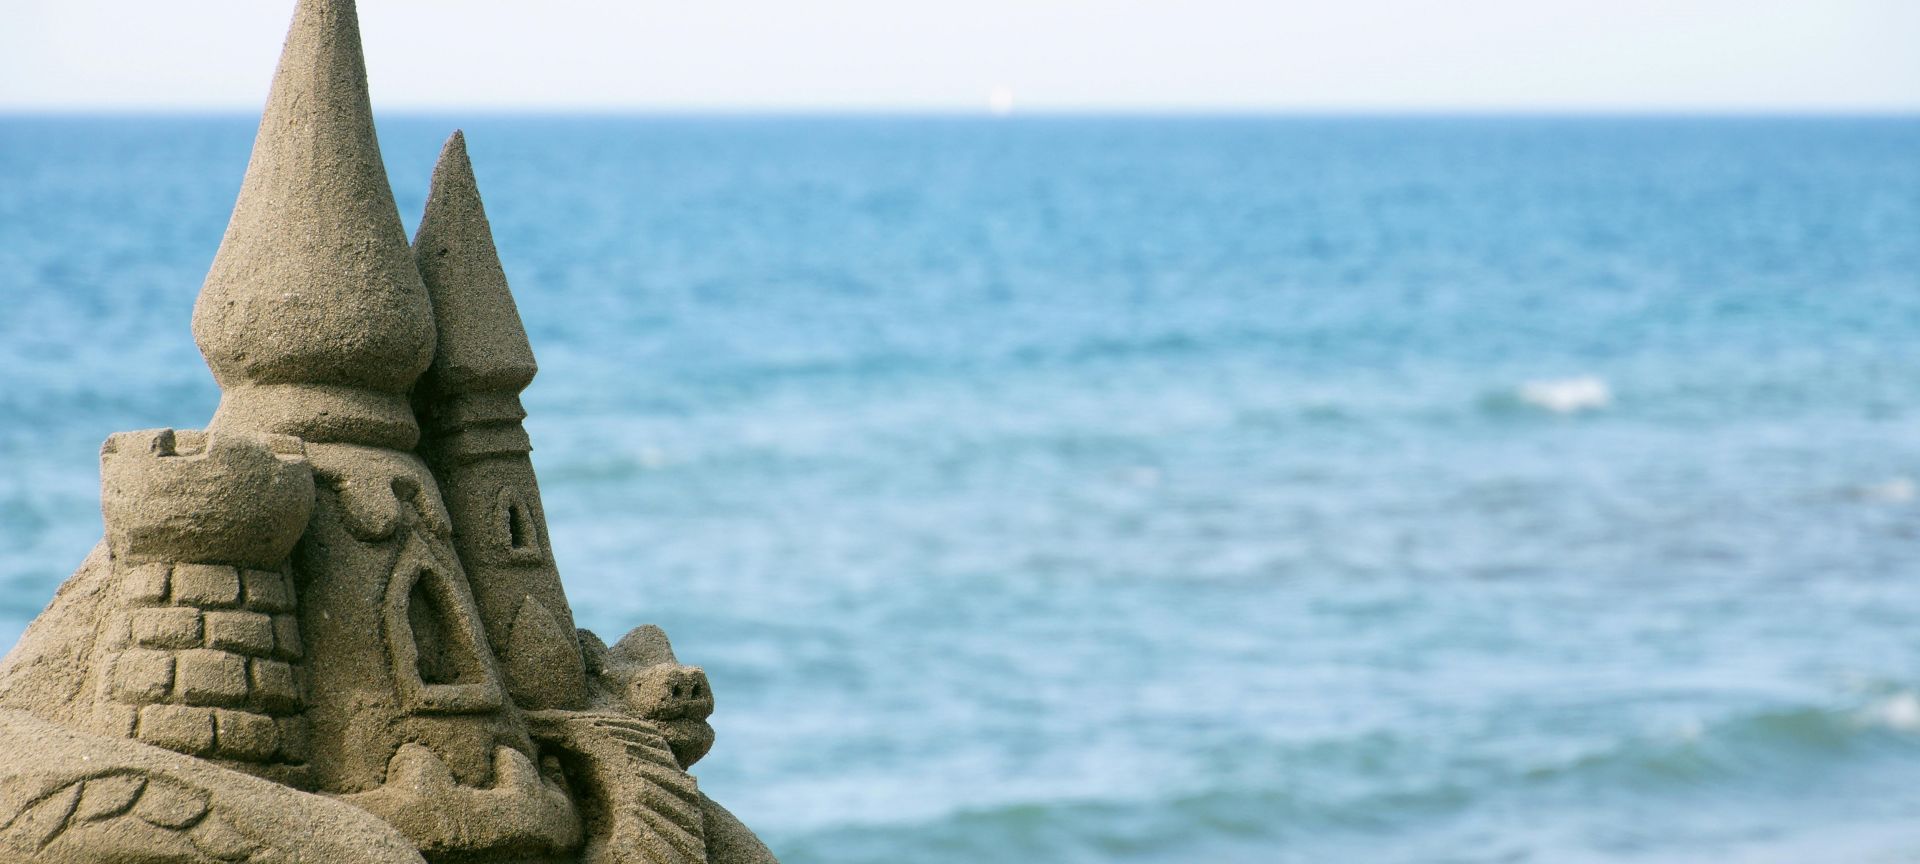 A Stone Sculpture On A Beach